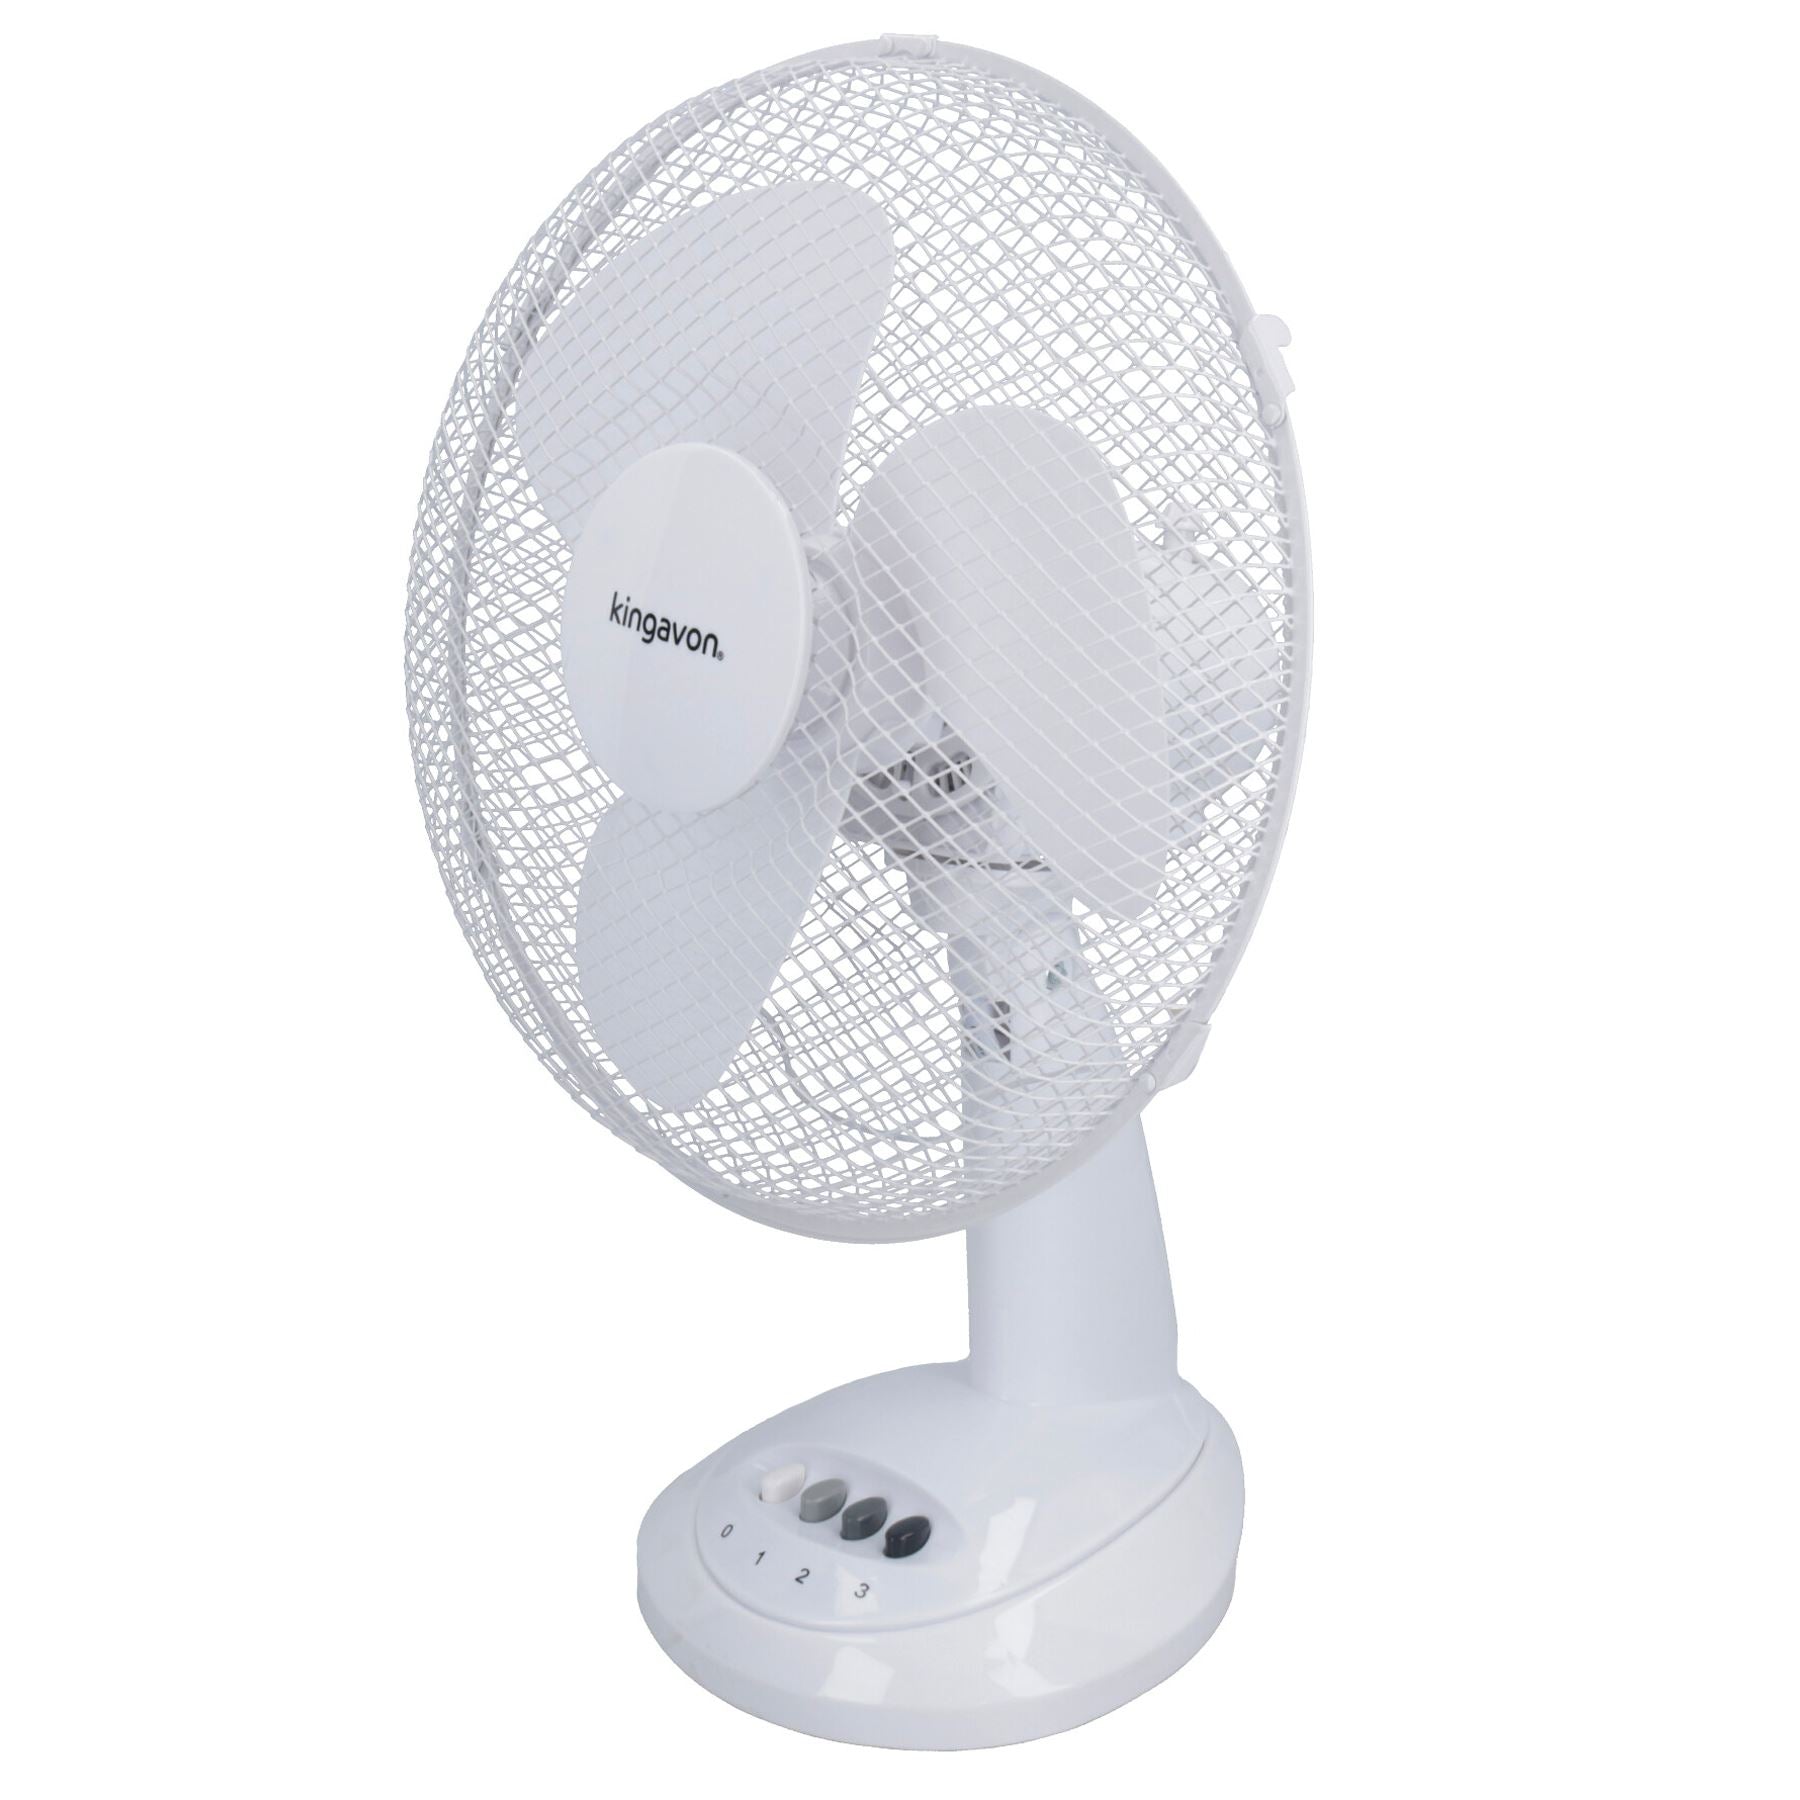 12” Oscillating Desk Fan Portable Tilting Head Cooling 3 Speed Silent UK Plug